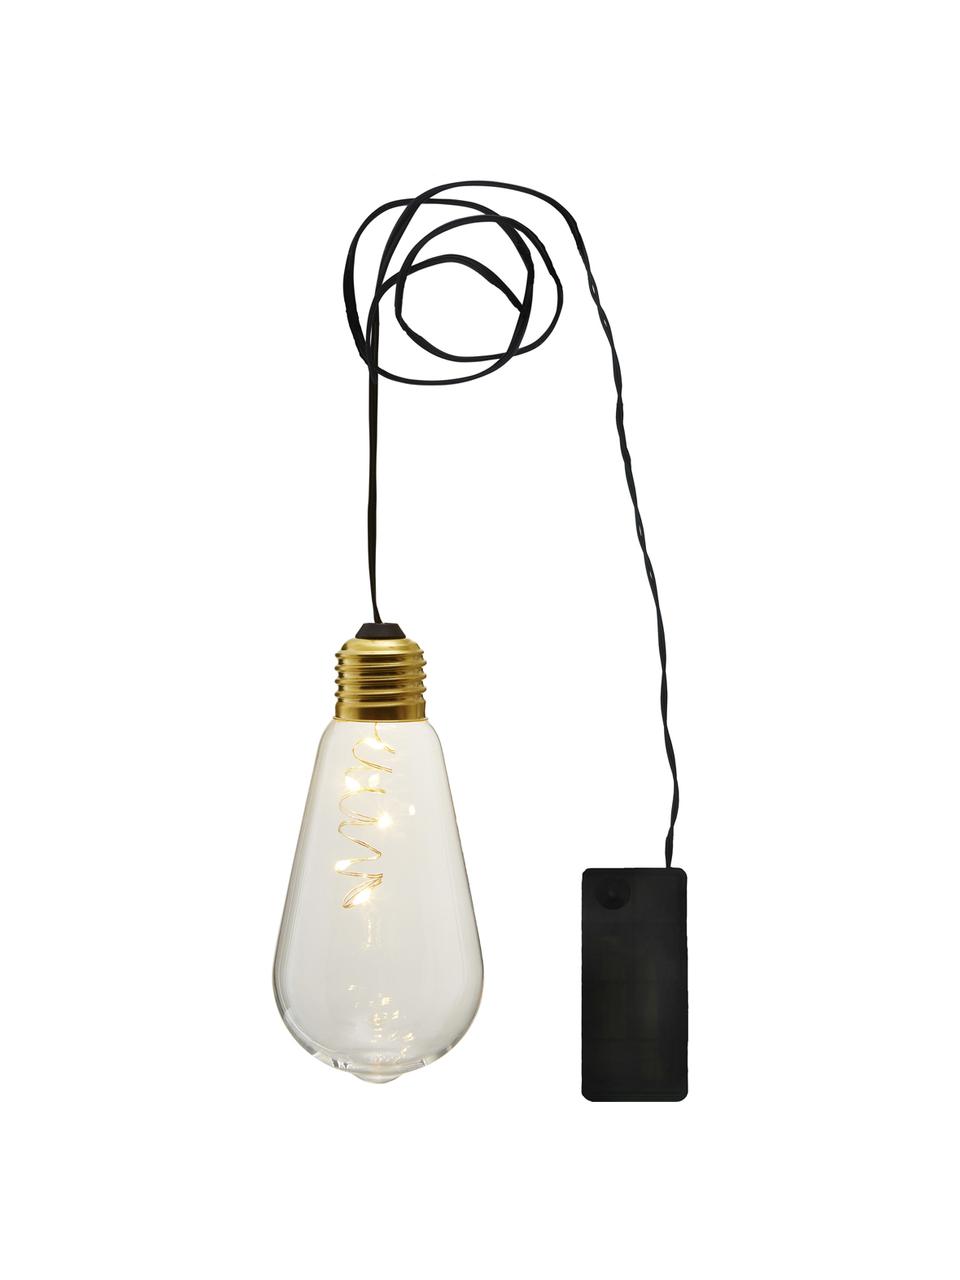 Dekorativní LED svítidlo Glow, 1 ks, Transparentní, Ø 6 cm, V 13 cm